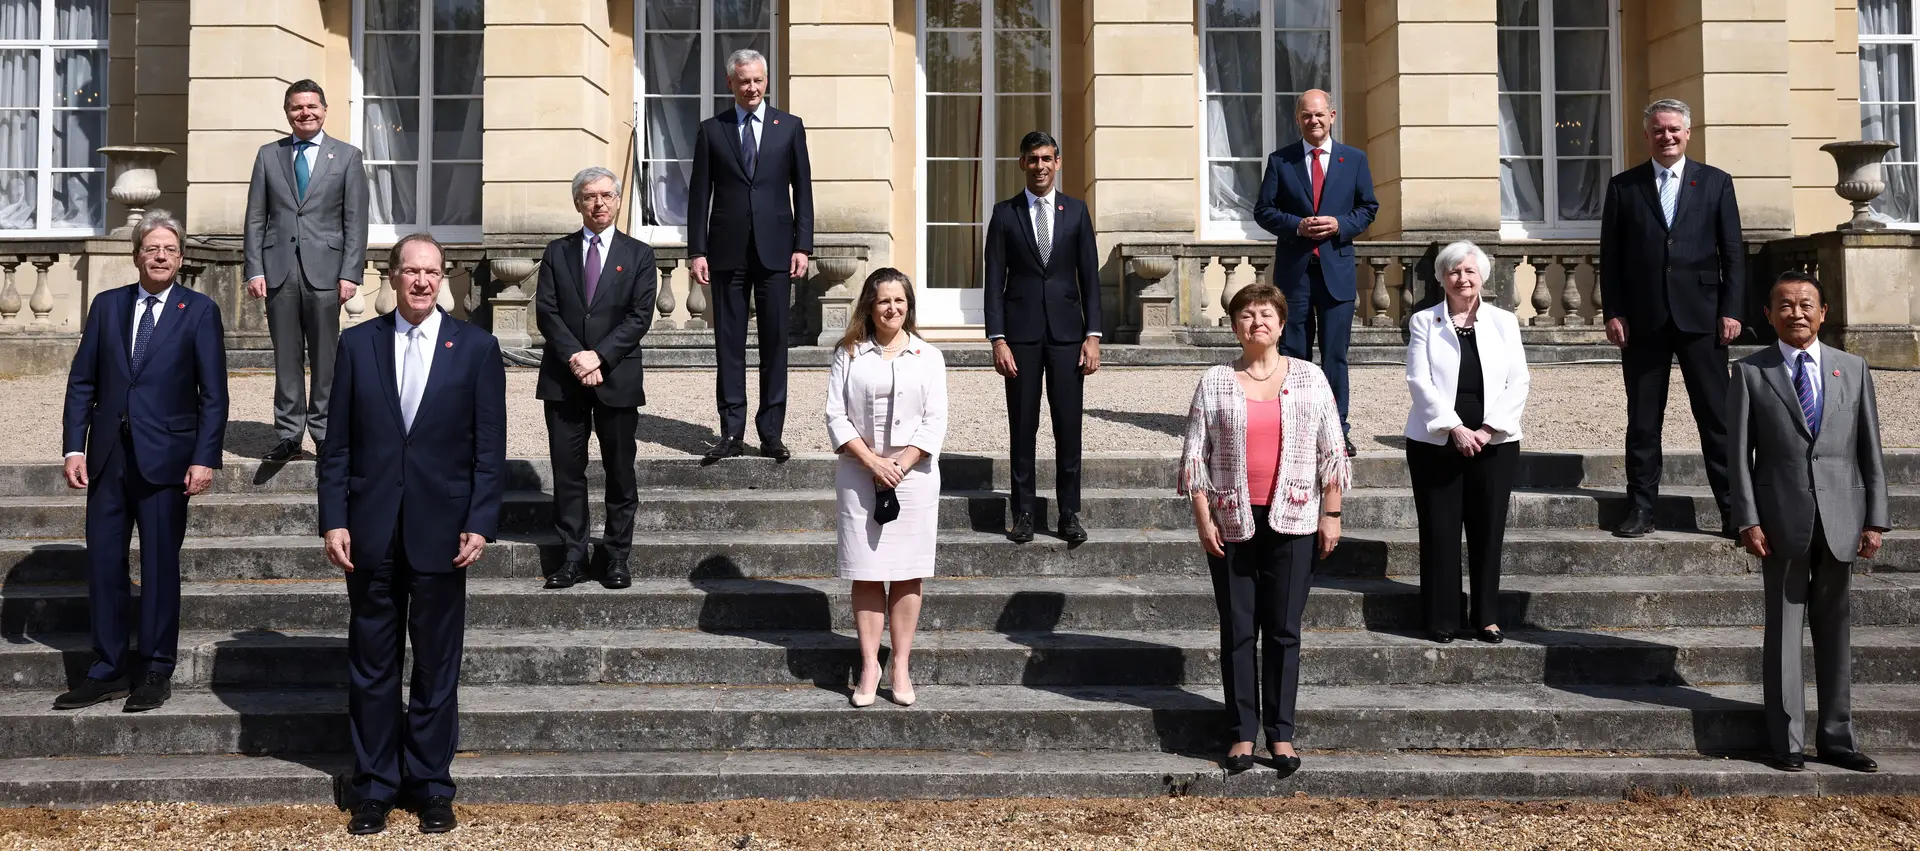 Ministros das Finanças do G7 chegam a acordo histórico para taxar multinacionais